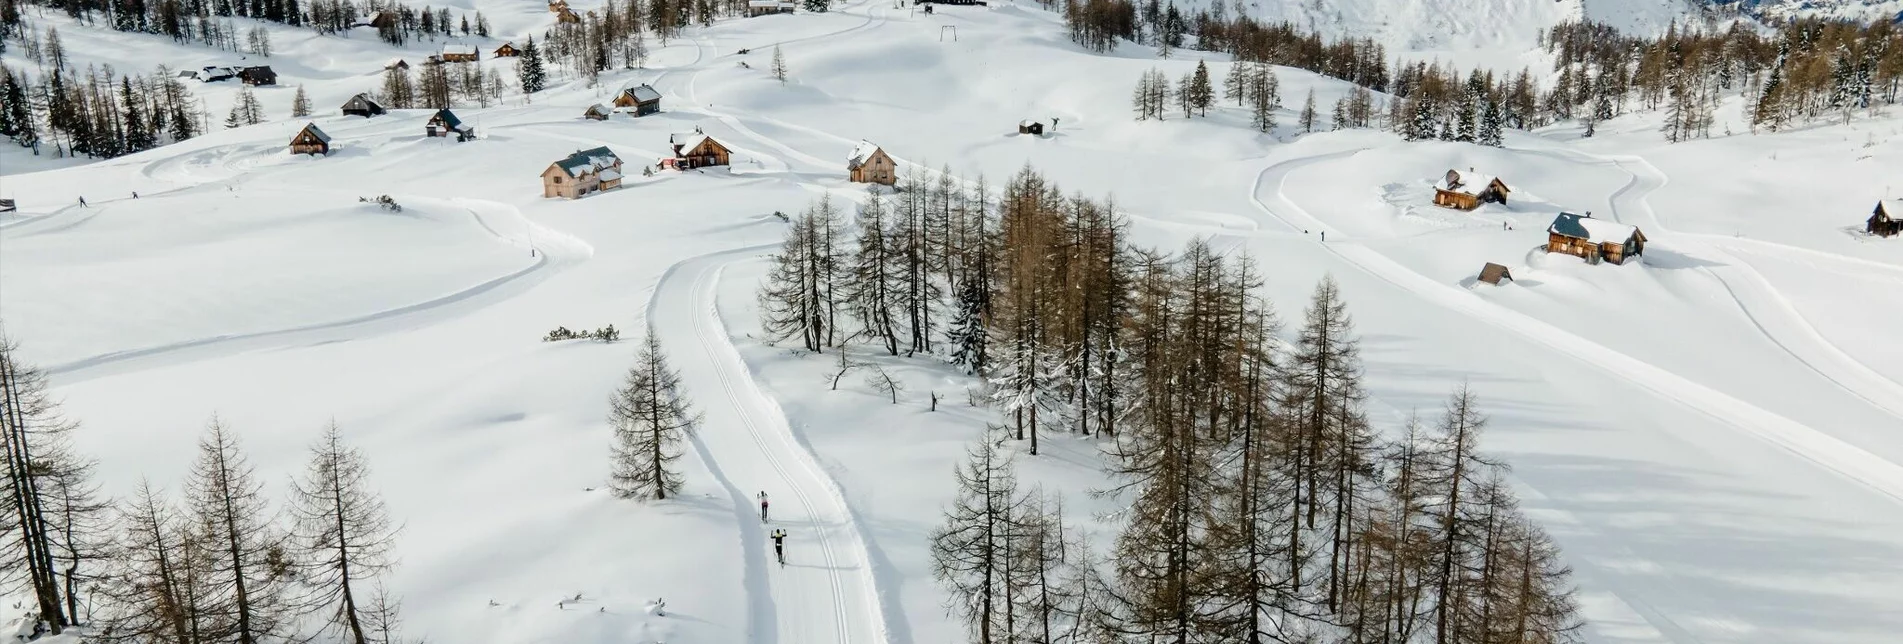 Ski-nordic-classic Sturzhahn cross-country ski trail on the Tauplitzalm - Touren-Impression #1 | © TVB Ausseerland Salzkammergut